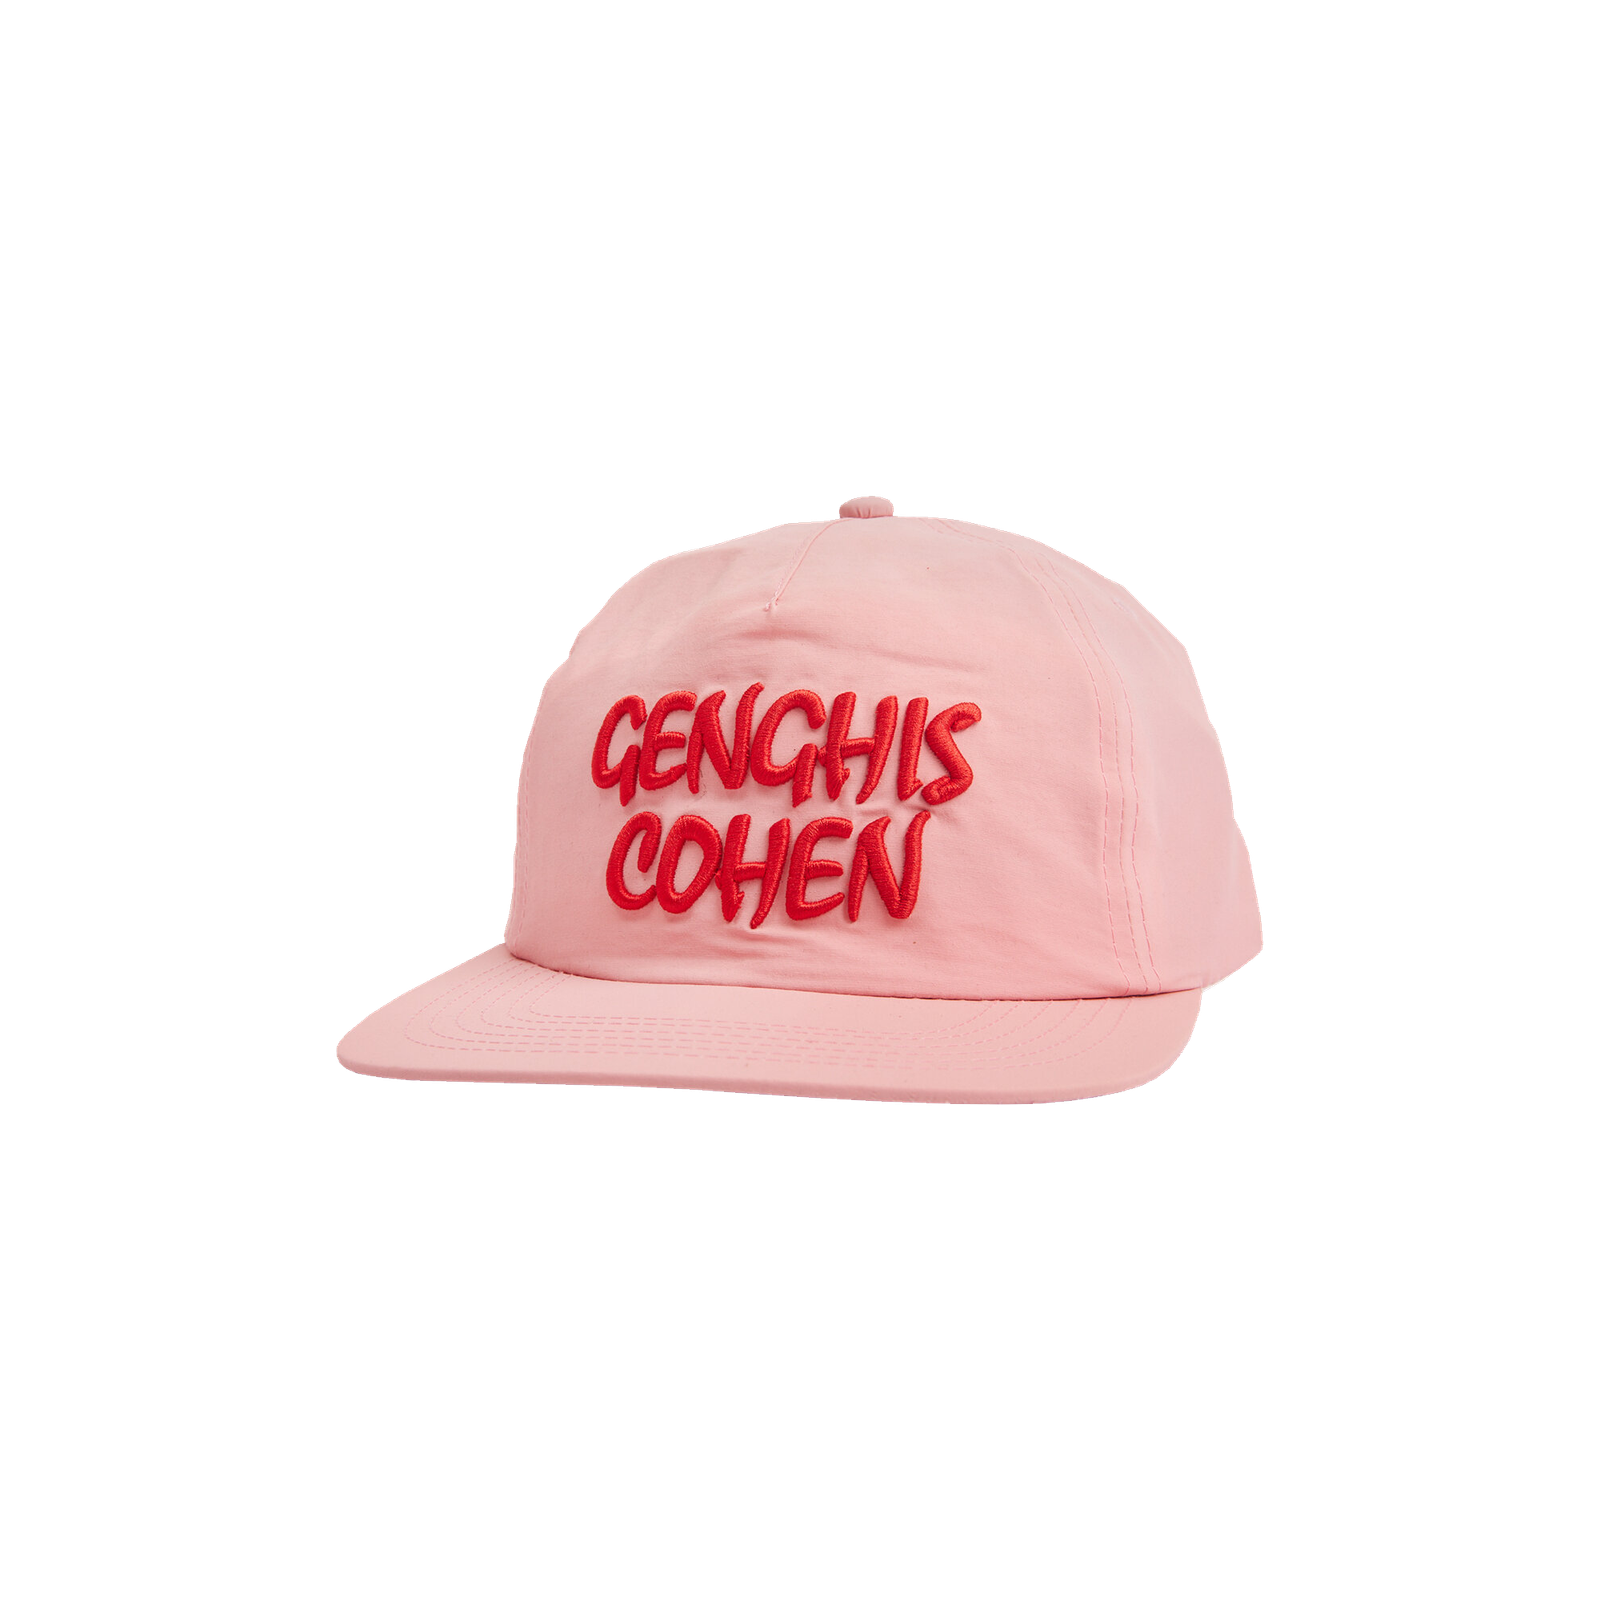 Genghis Cohen Hat-0